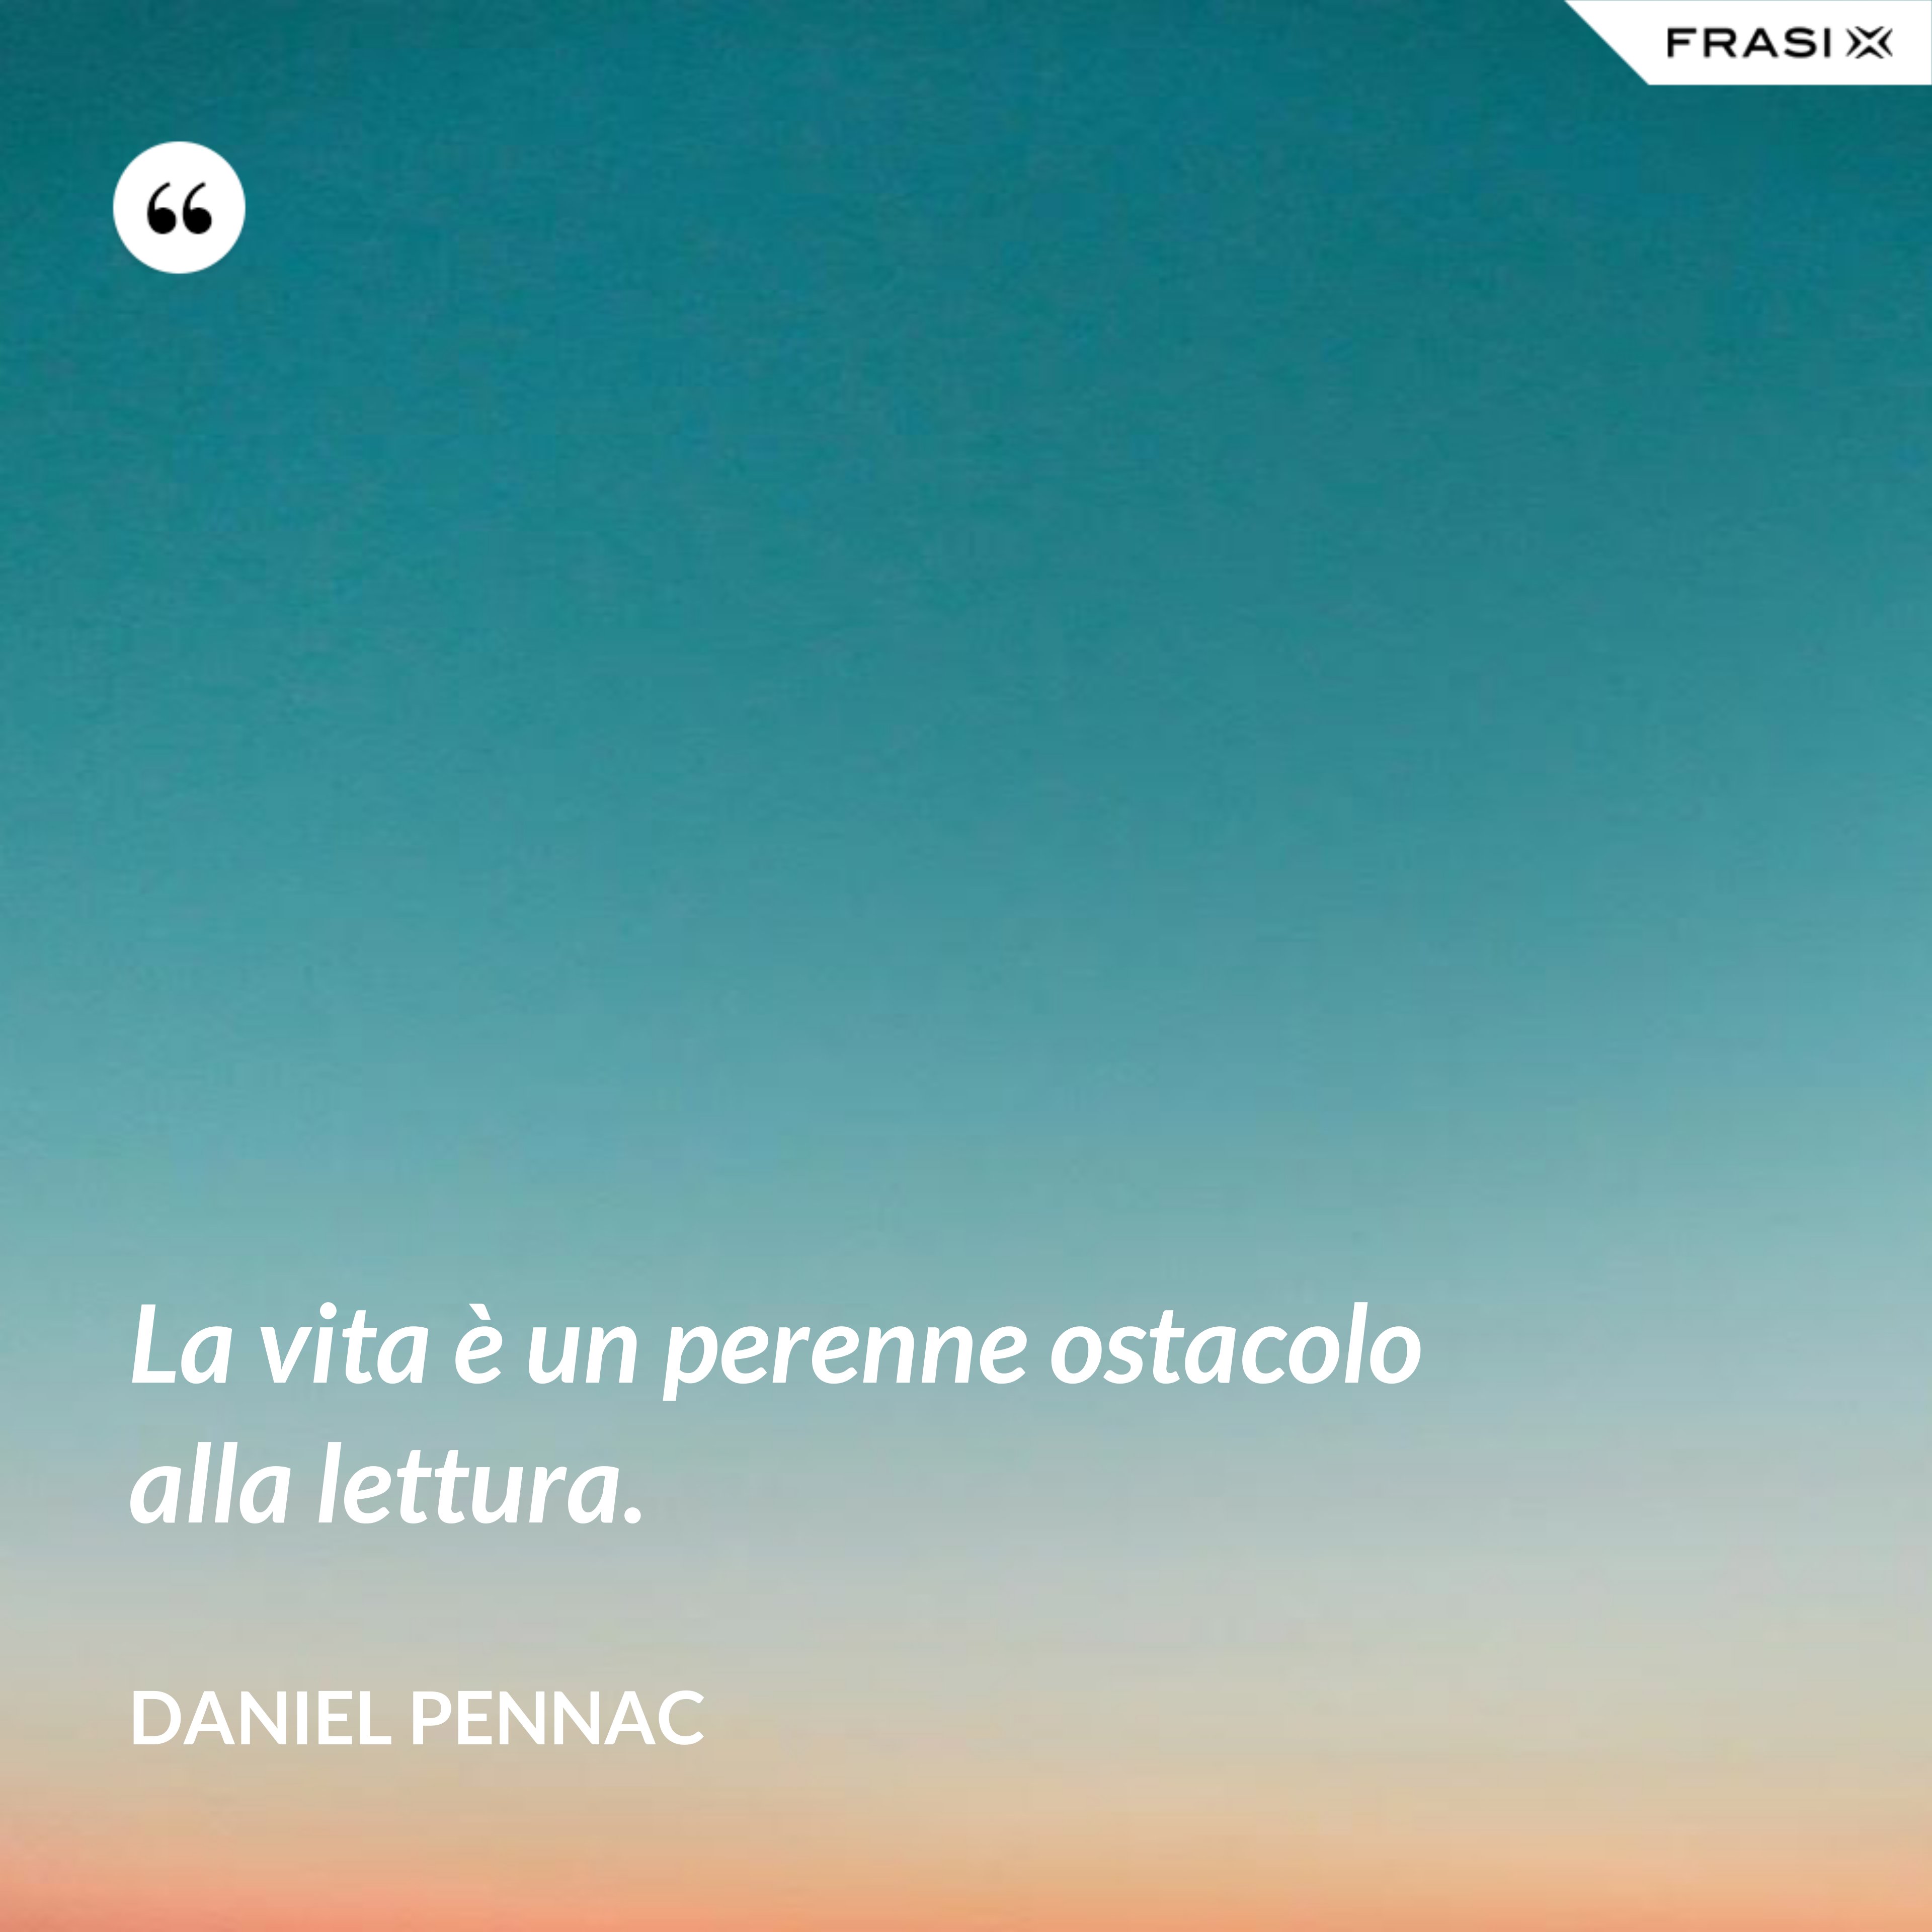 La vita è un perenne ostacolo alla lettura. - Daniel Pennac